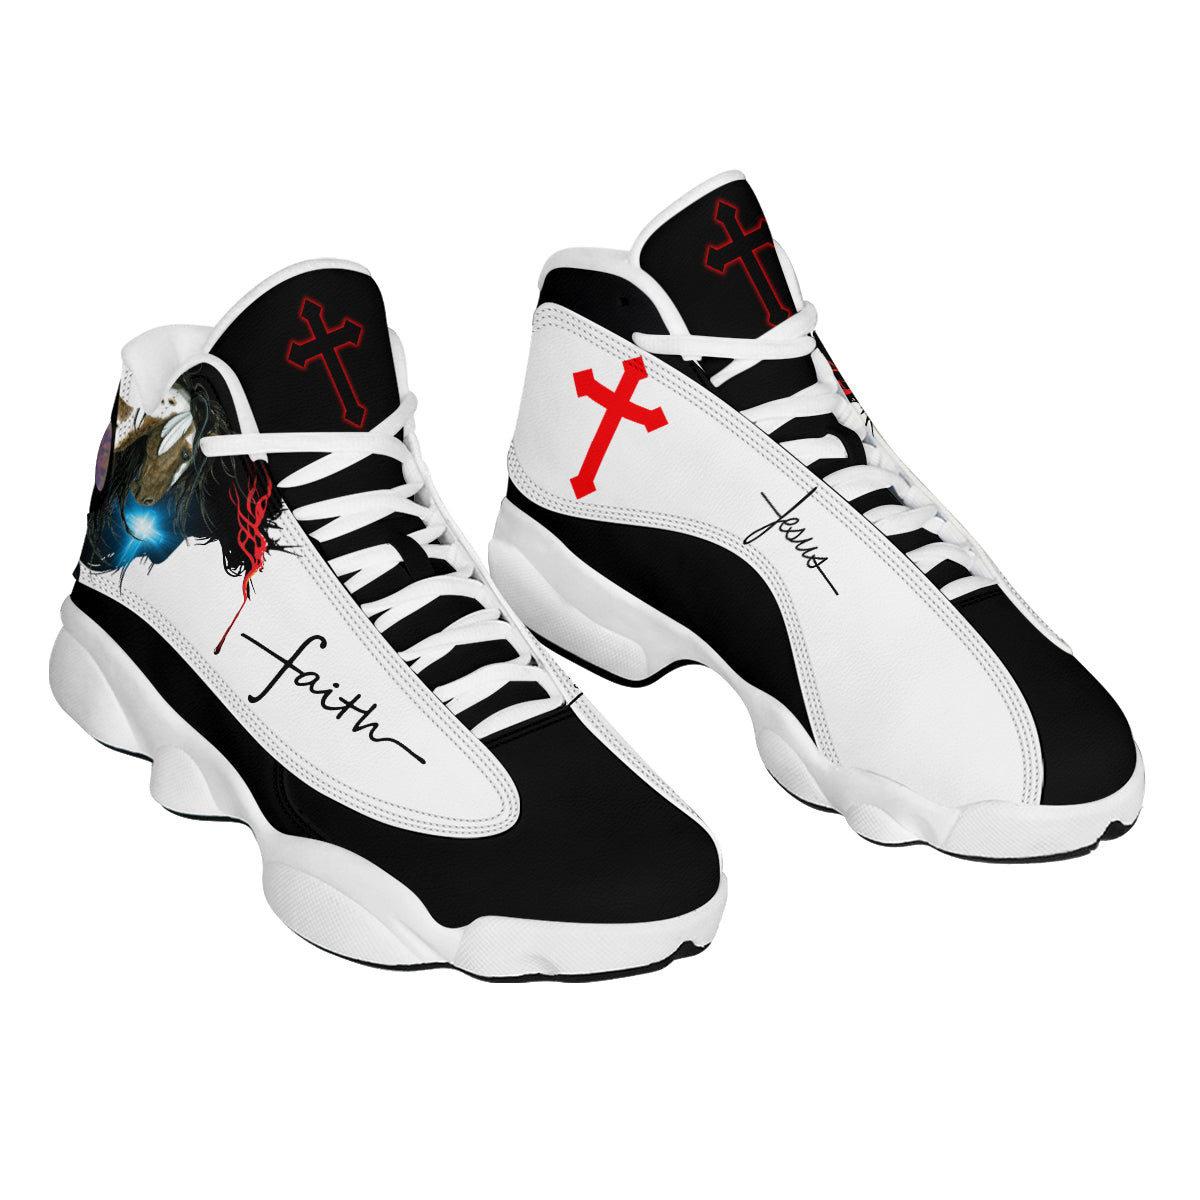 Jesus Faith Portrait Art Basketball Shoes For Men Women - Christian Shoes - Jesus Shoes - Unisex Basketball Shoes